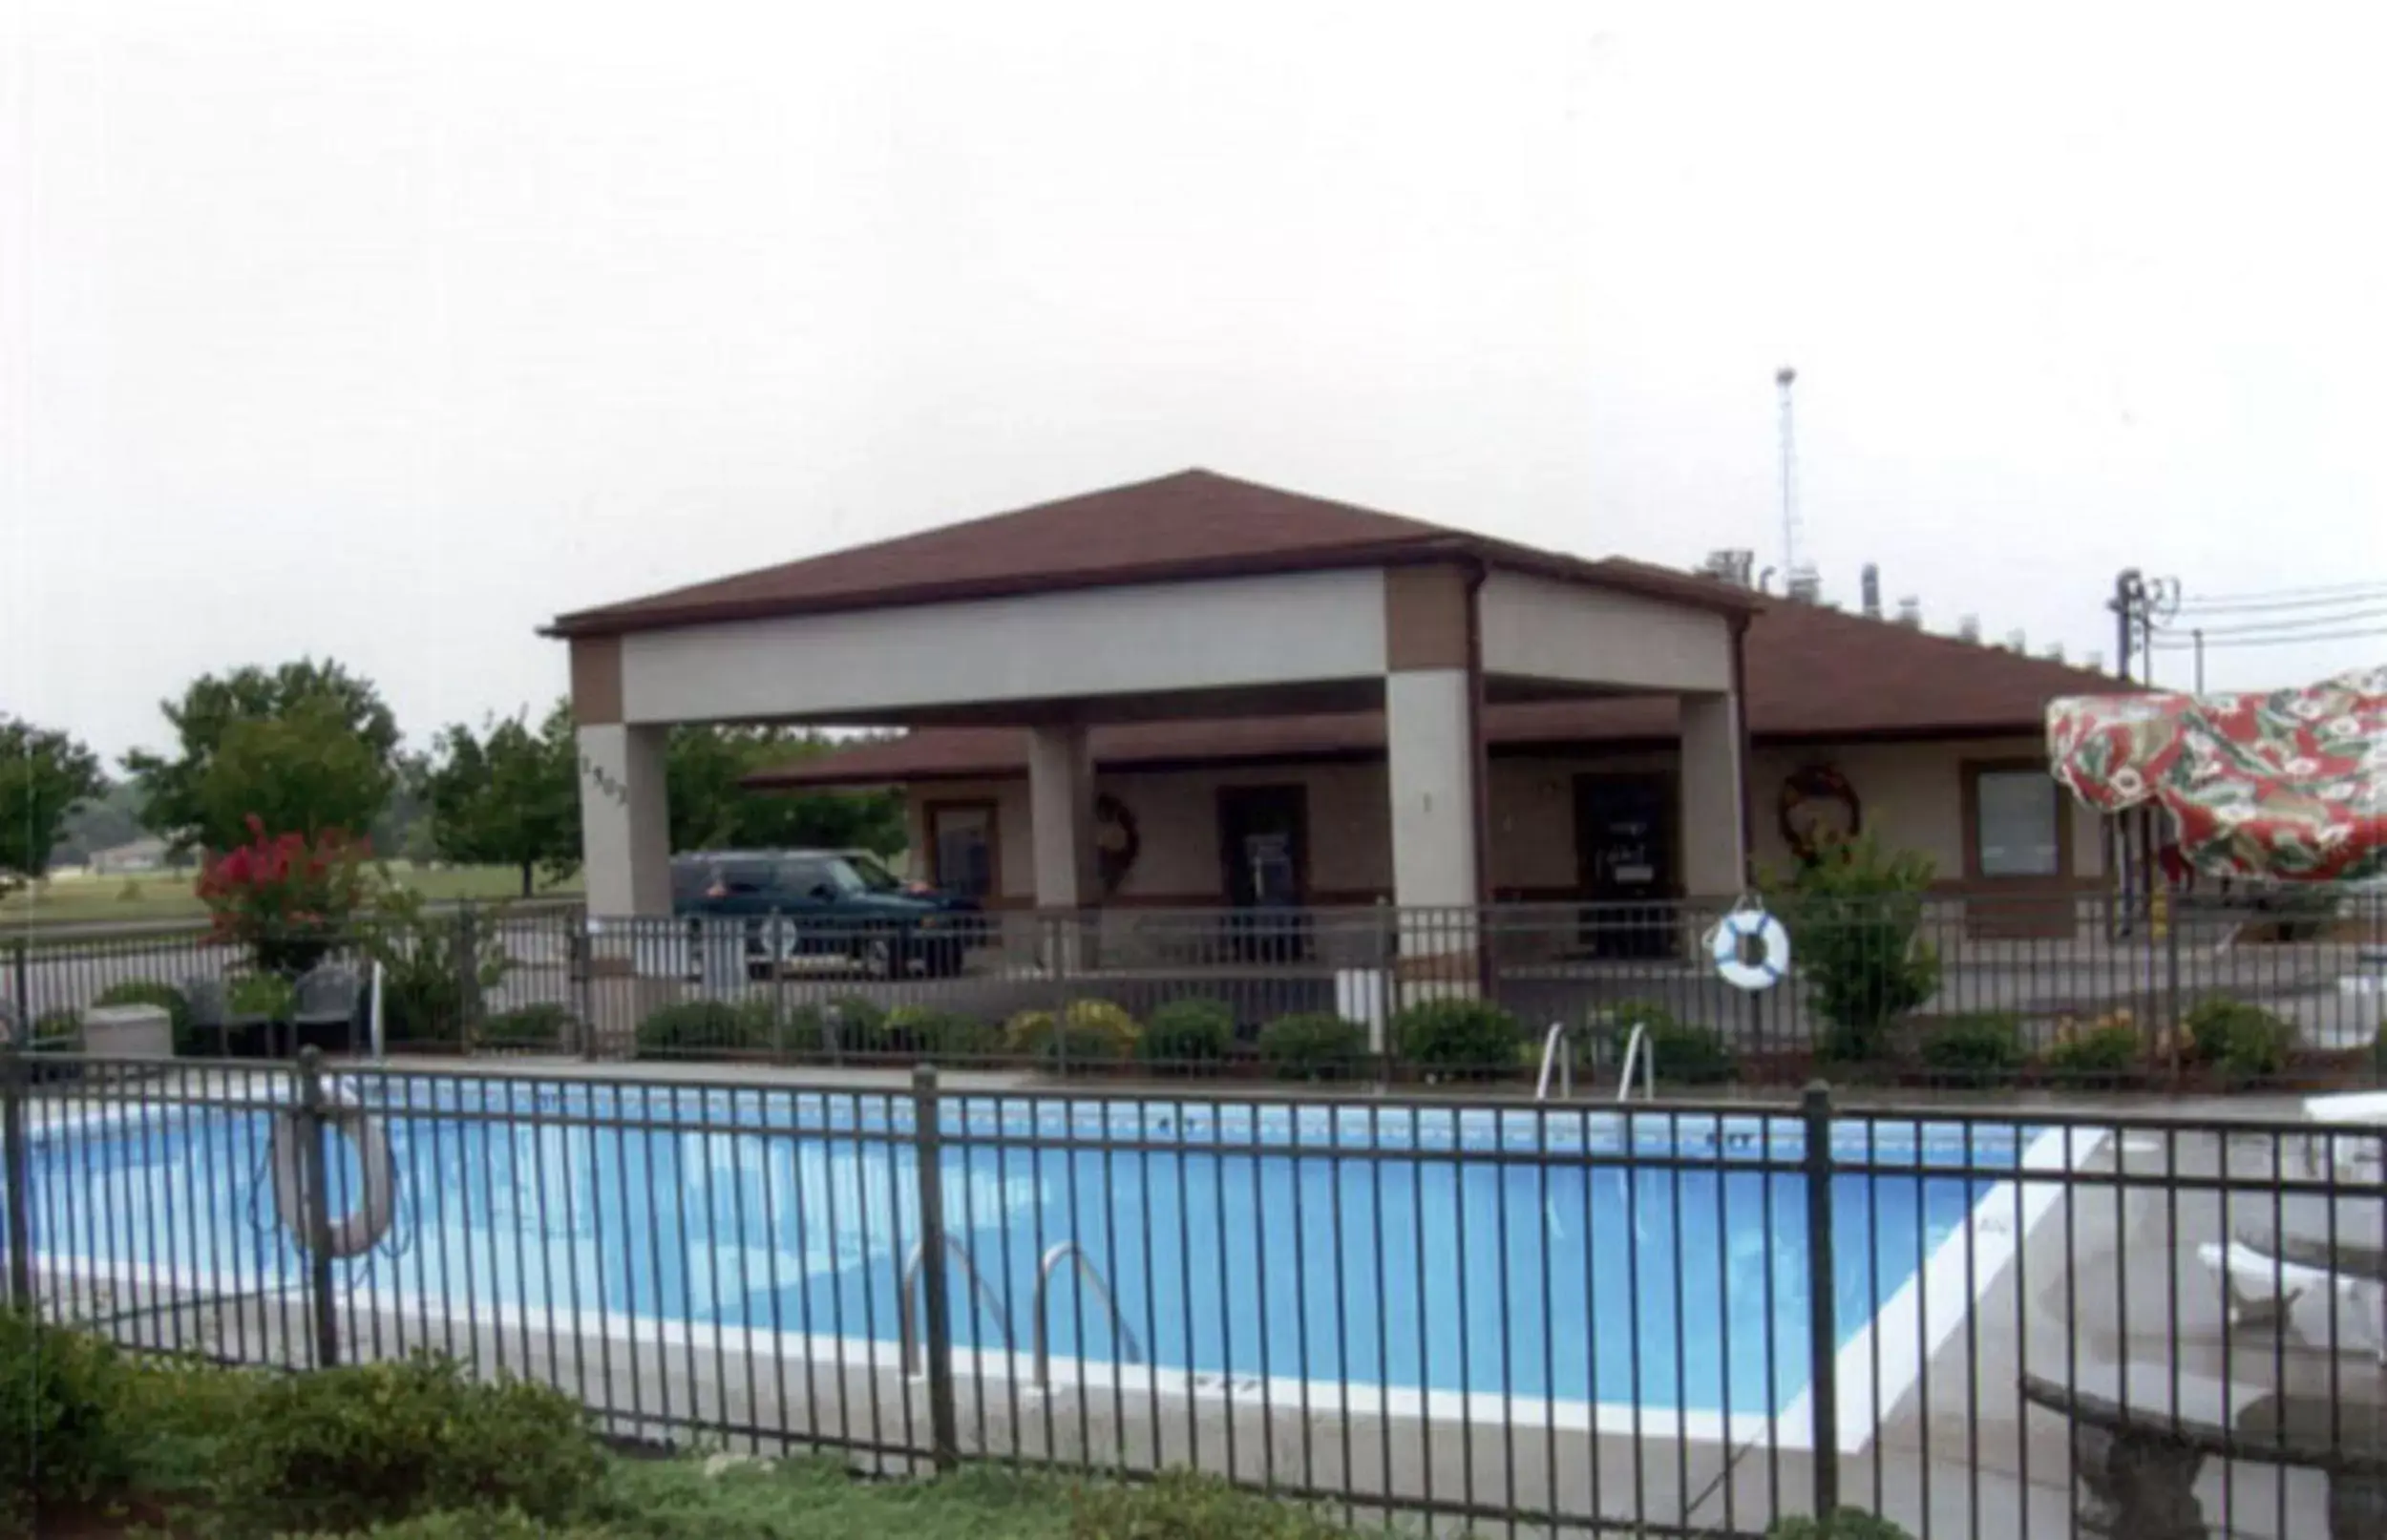 Property building, Swimming Pool in Briarwood Inn Of Geneva